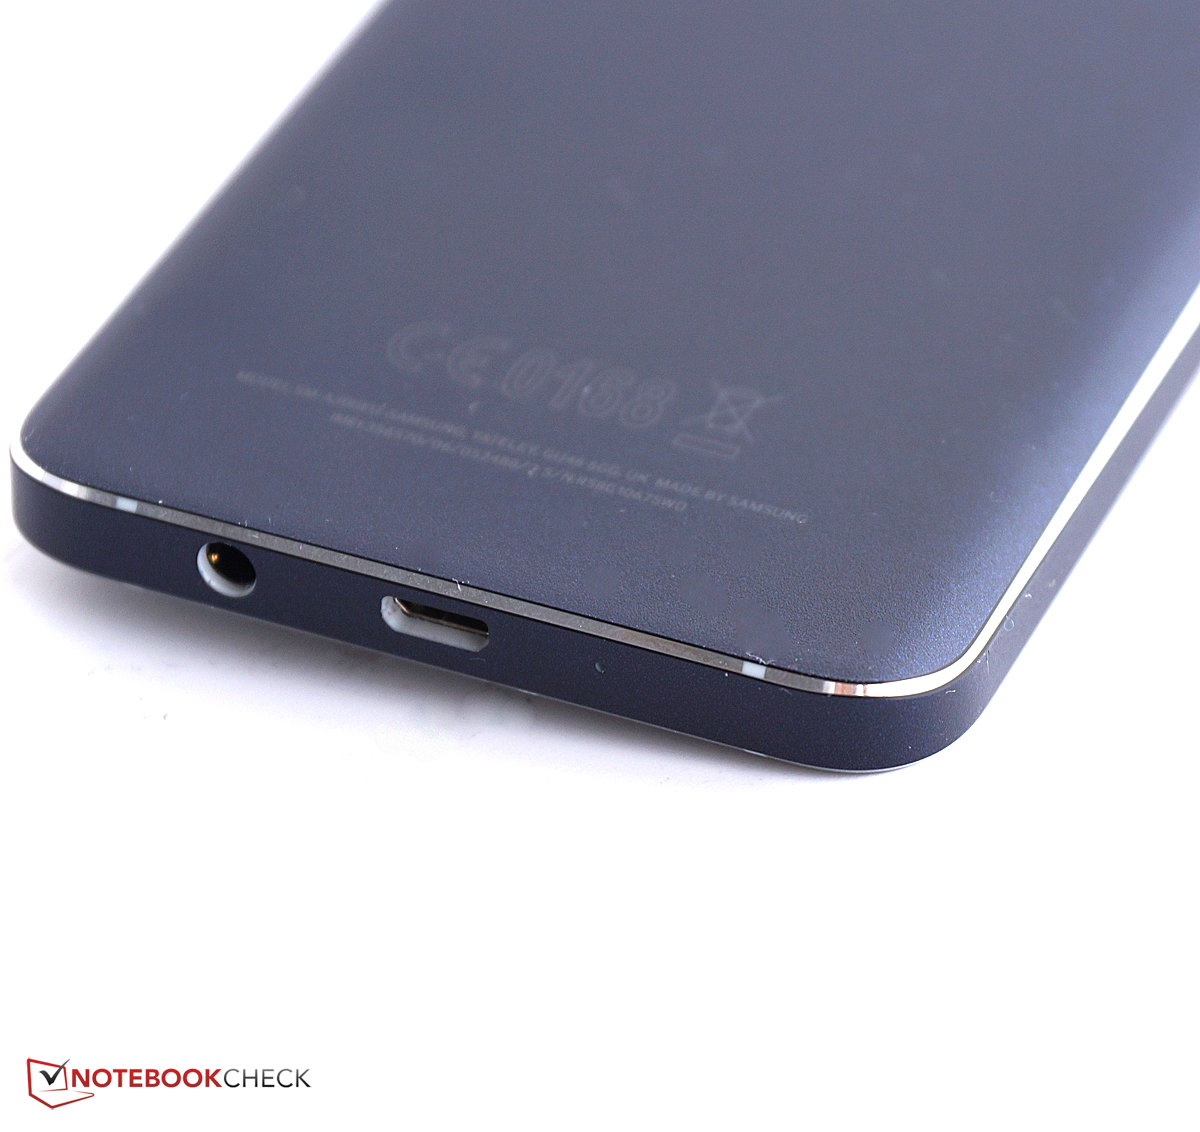 Afbreken Haalbaar kruis Samsung Galaxy A3 Smartphone Review - NotebookCheck.net Reviews